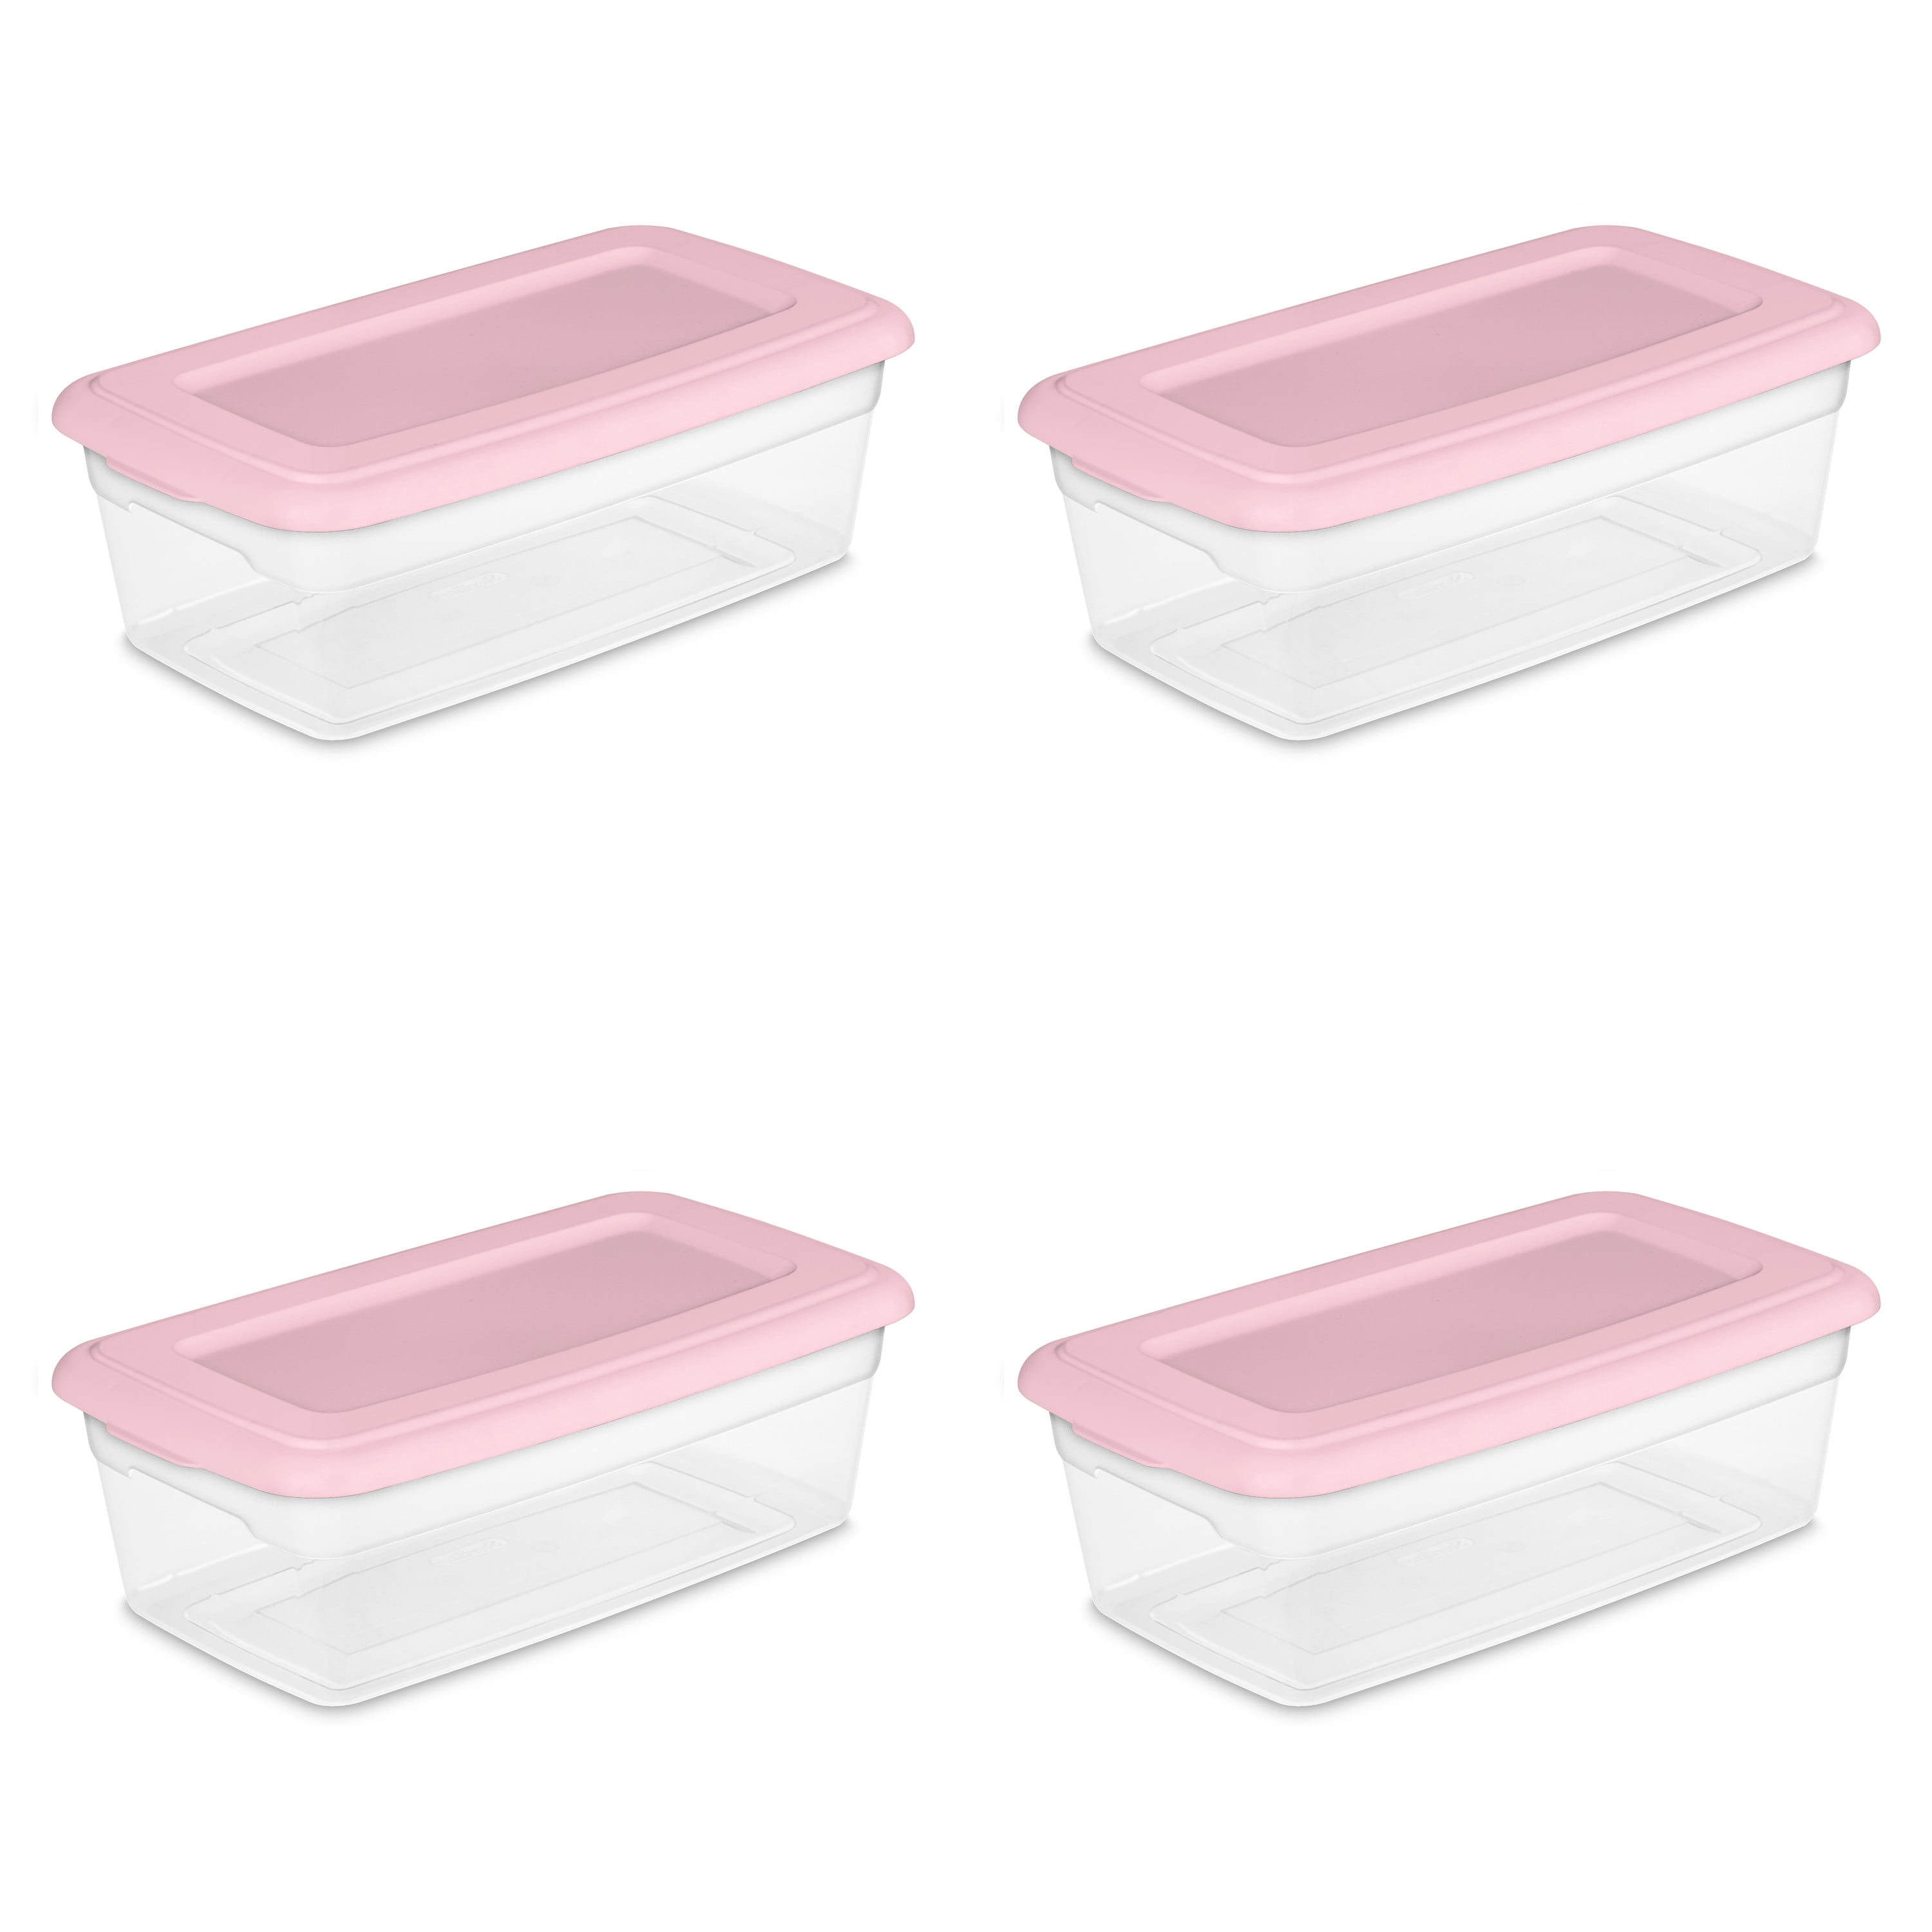 Sterilite 1.5 Gallon Plastic Storage Box, Blush Pink, 10 Count